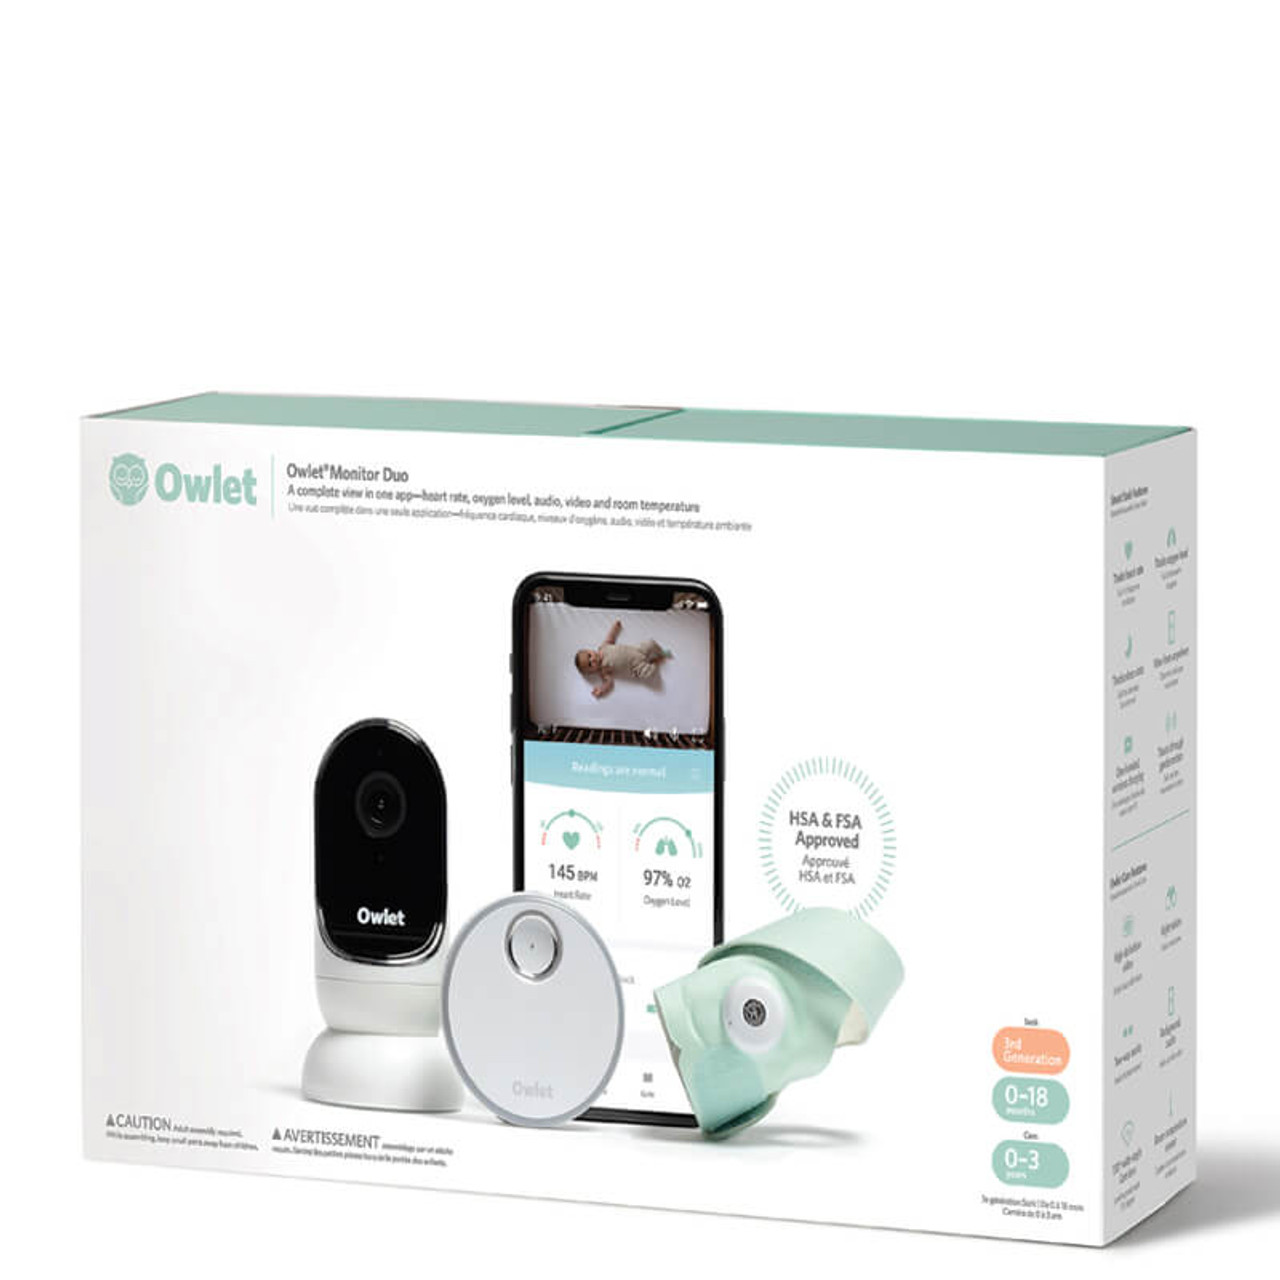 Baby Monitor Camera: HD Award-Winning Technology